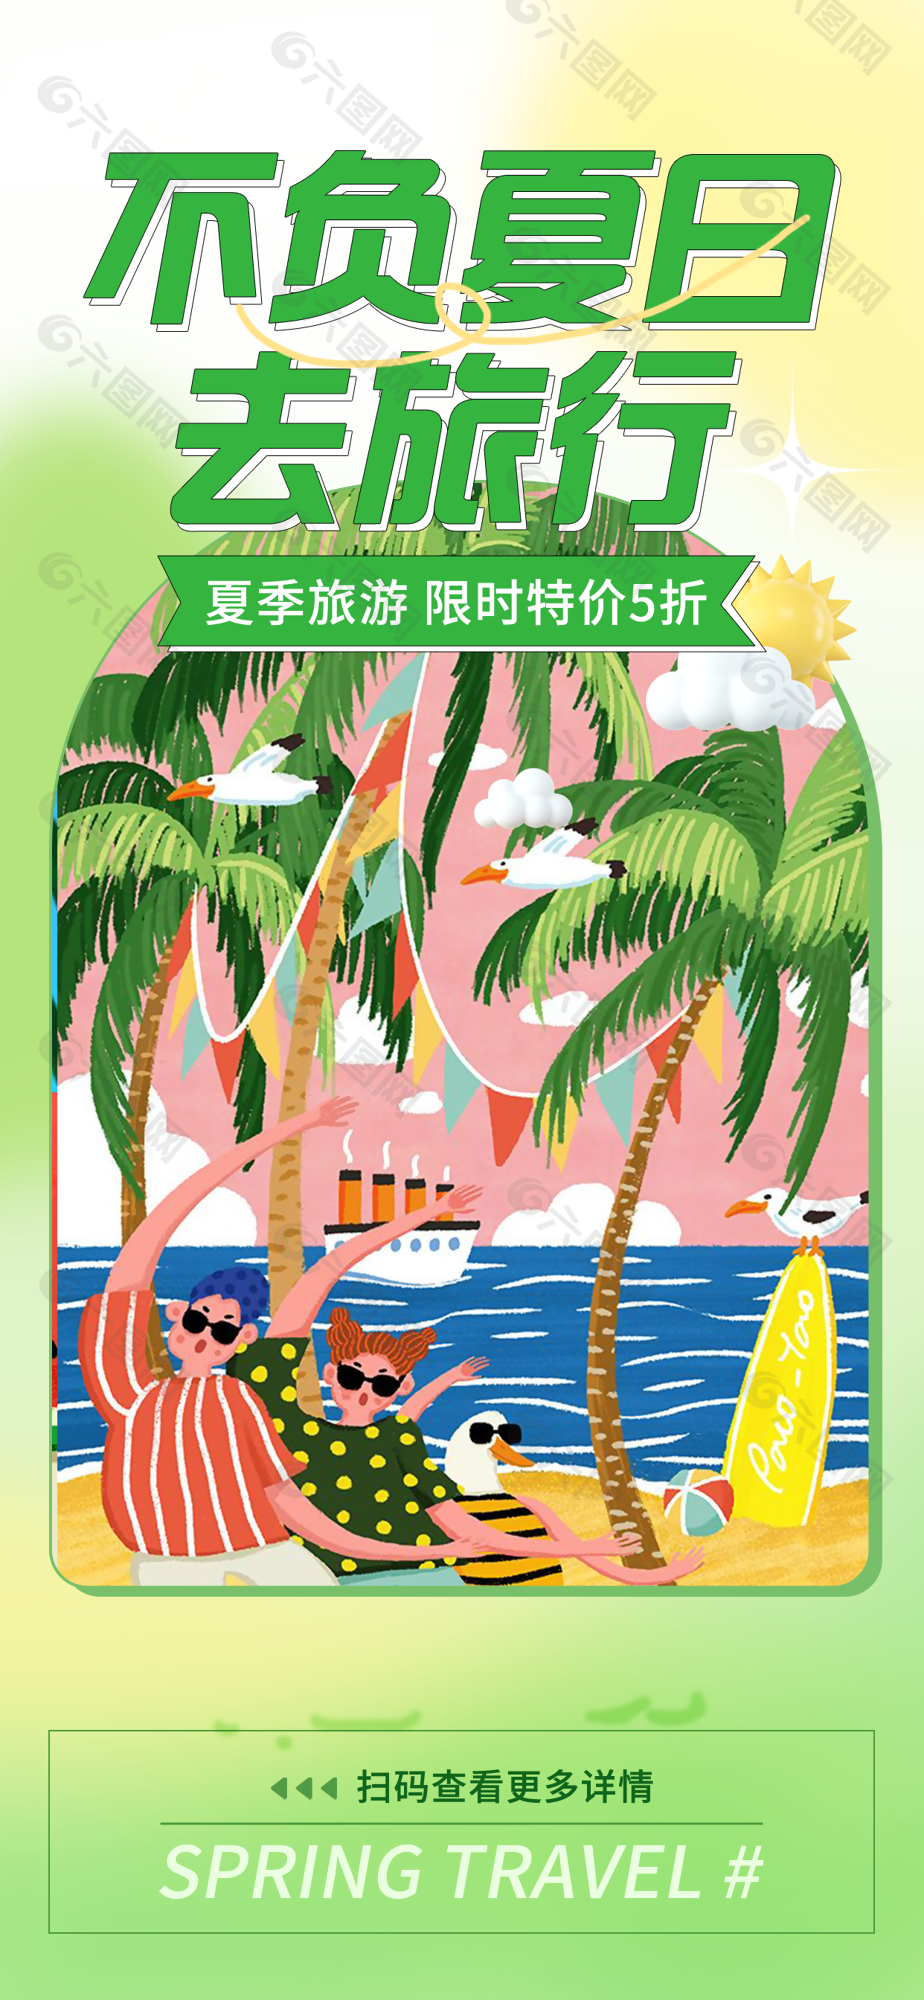 文艺清新卡通手绘夏日旅行海报图设计